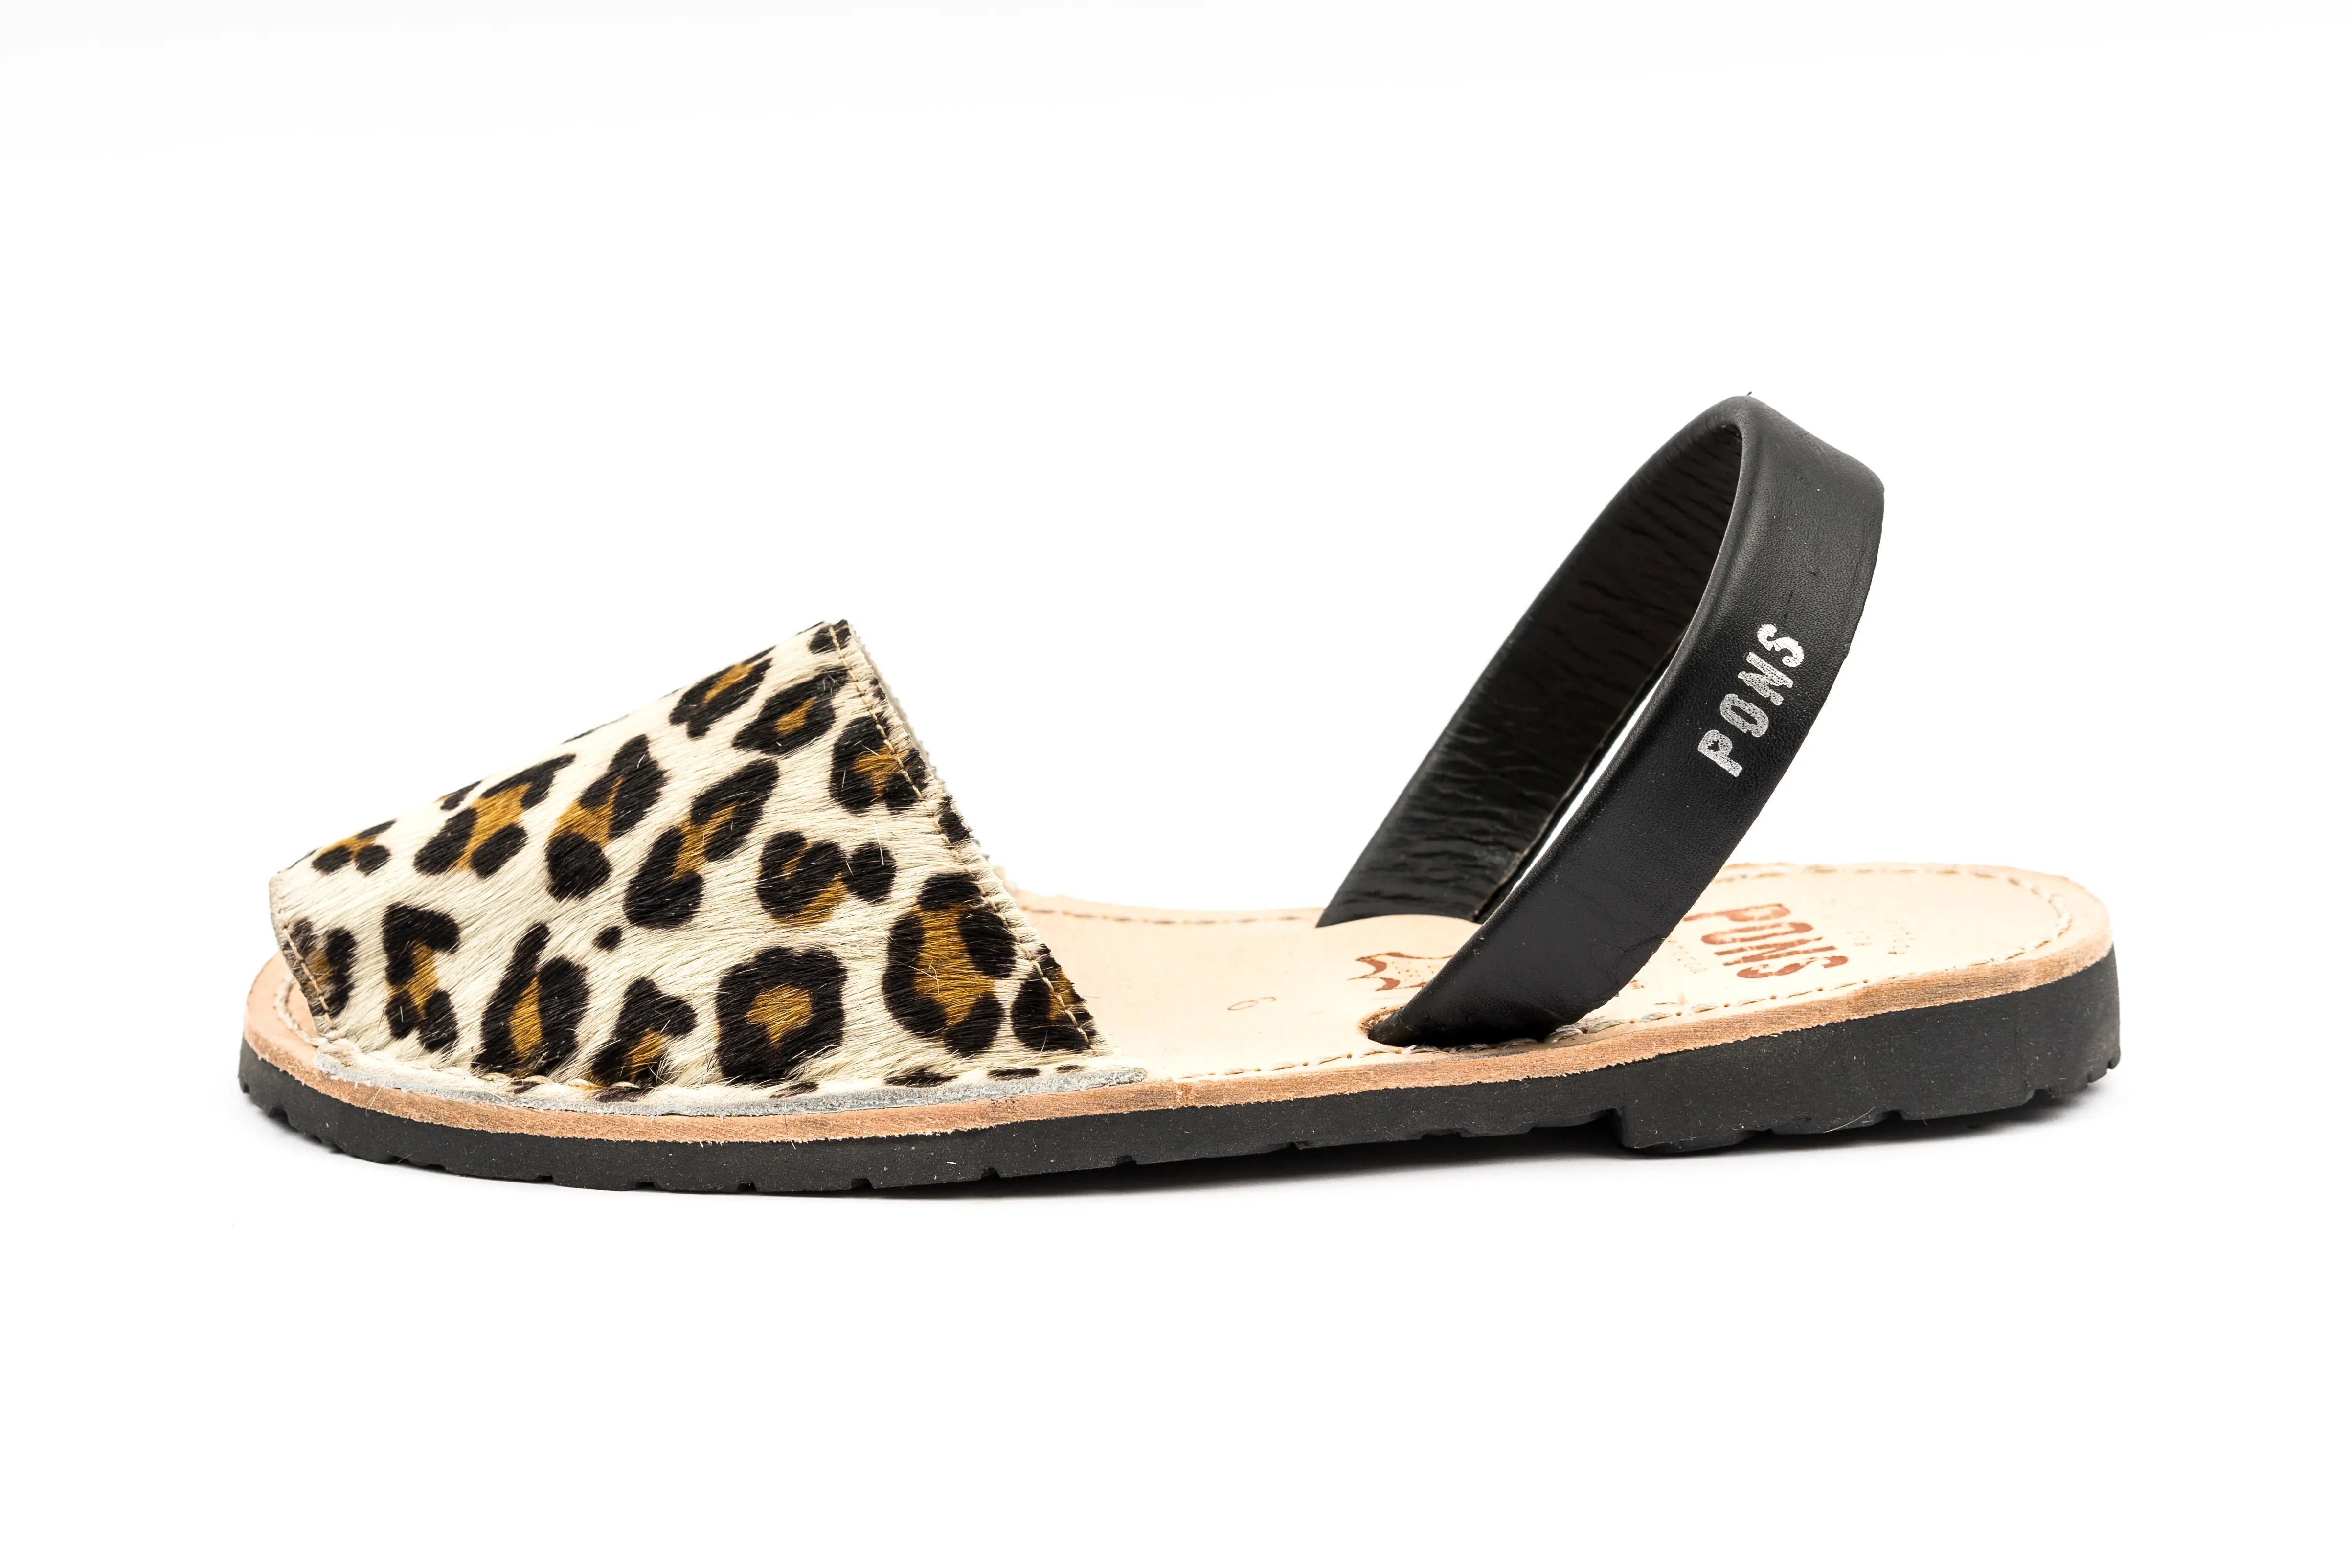 Pons Avarcas Classic Women's Sandals | Leopard